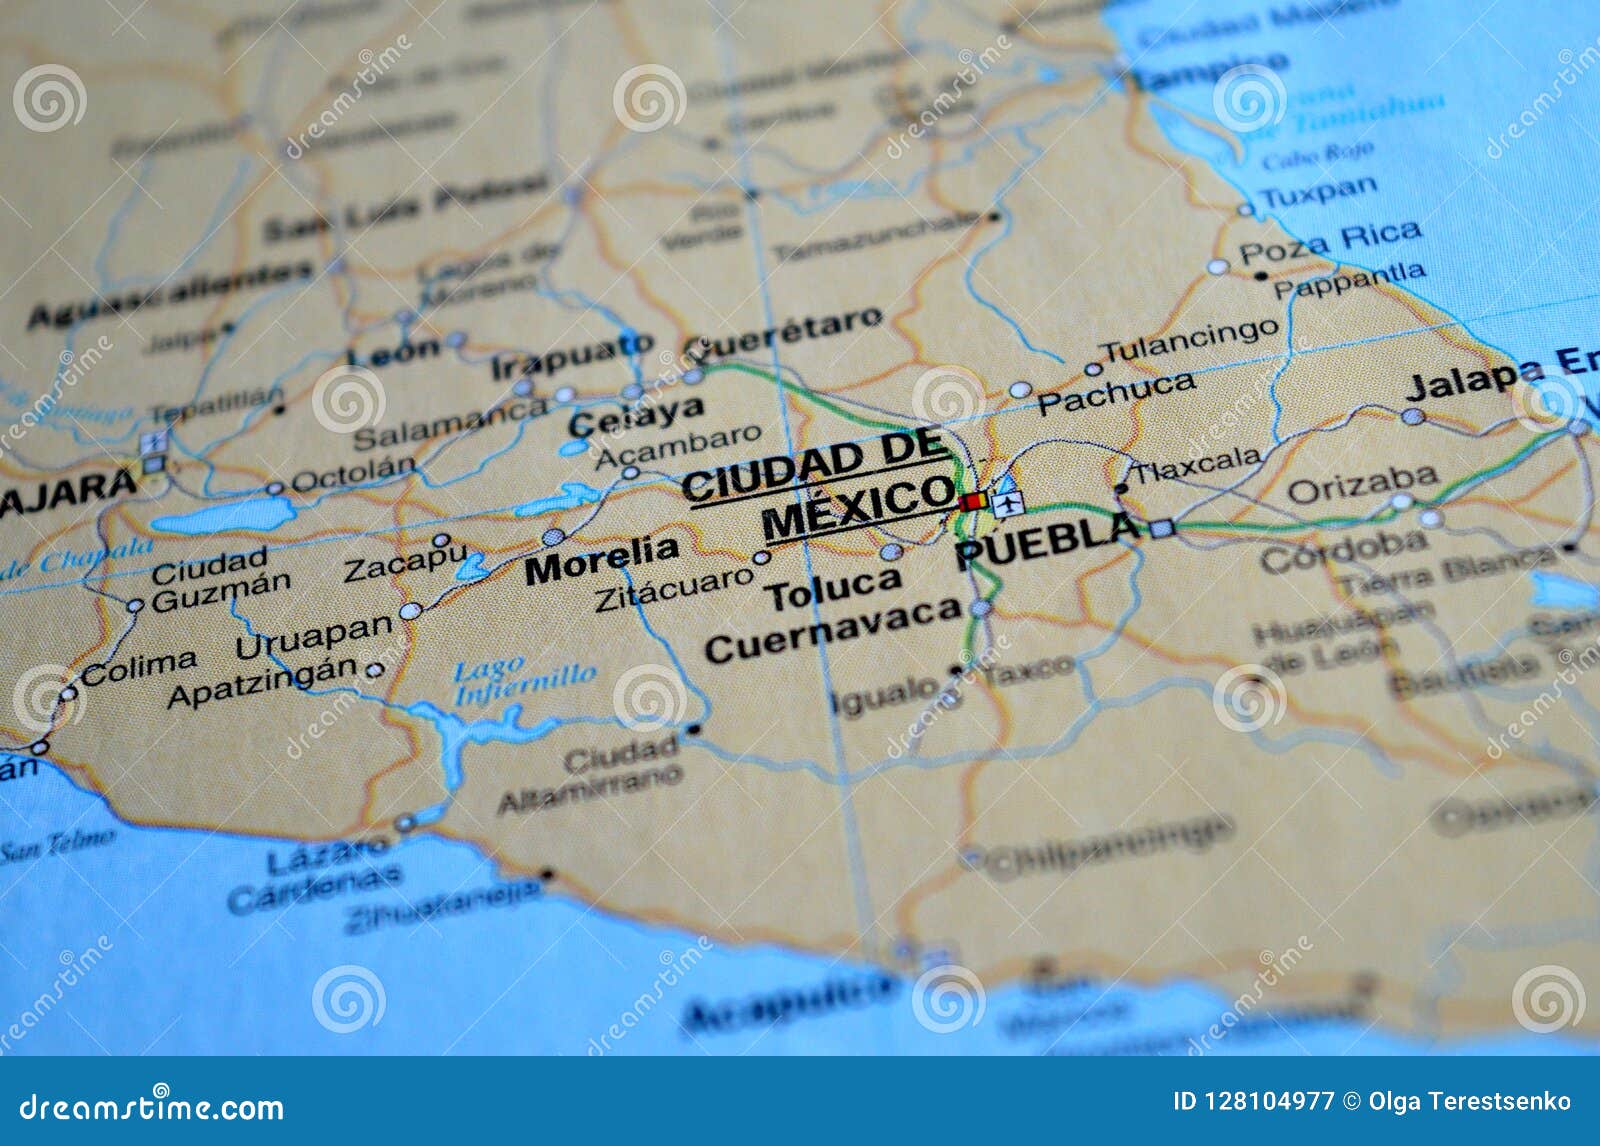 a photo of ciudad de mexico on a map